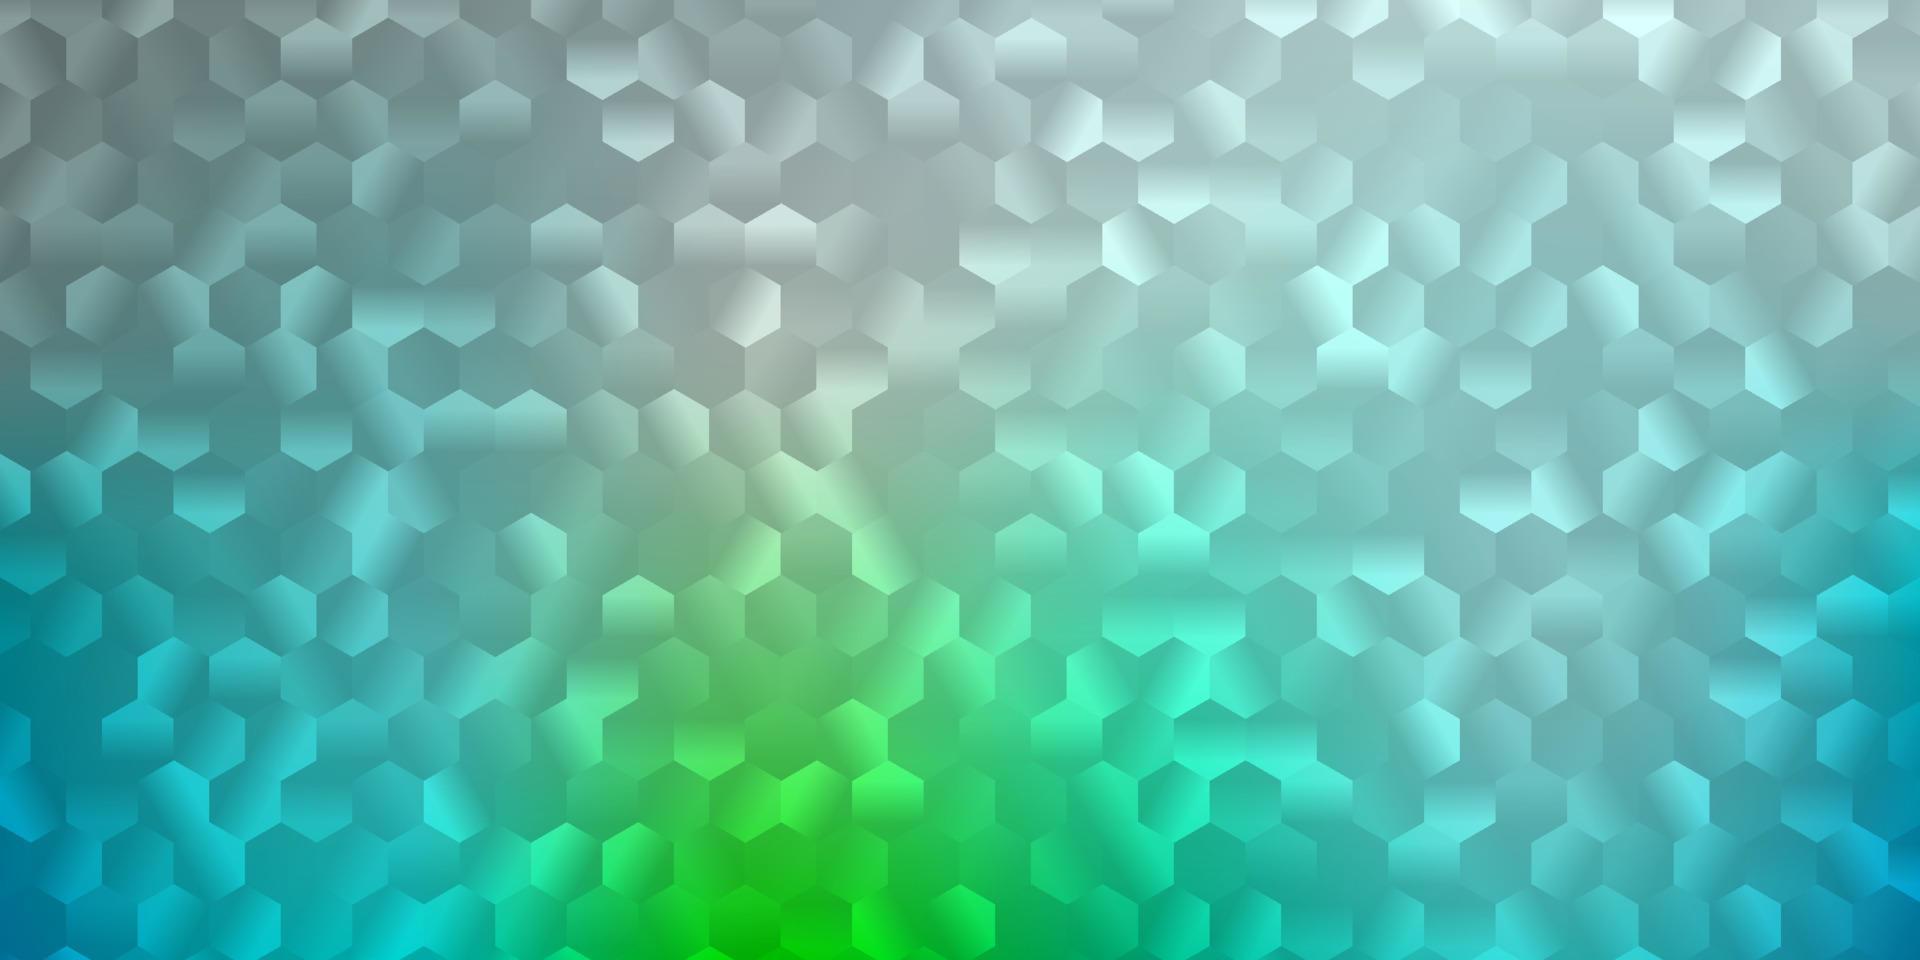 ljusblå, grön vektorbakgrund med sexkantiga former. vektor